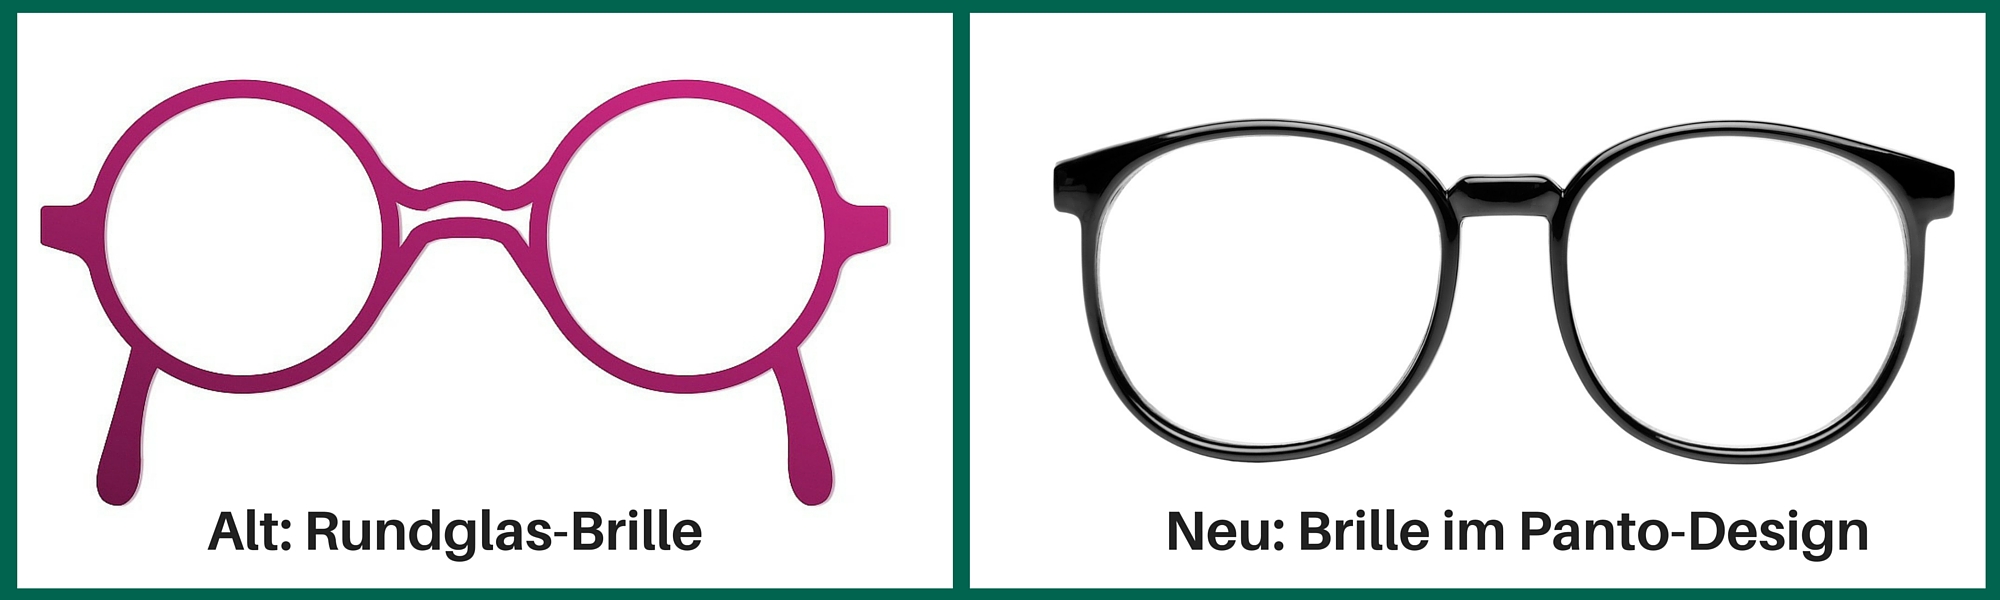 Rundglas- und Panto-Brille im Vergleich